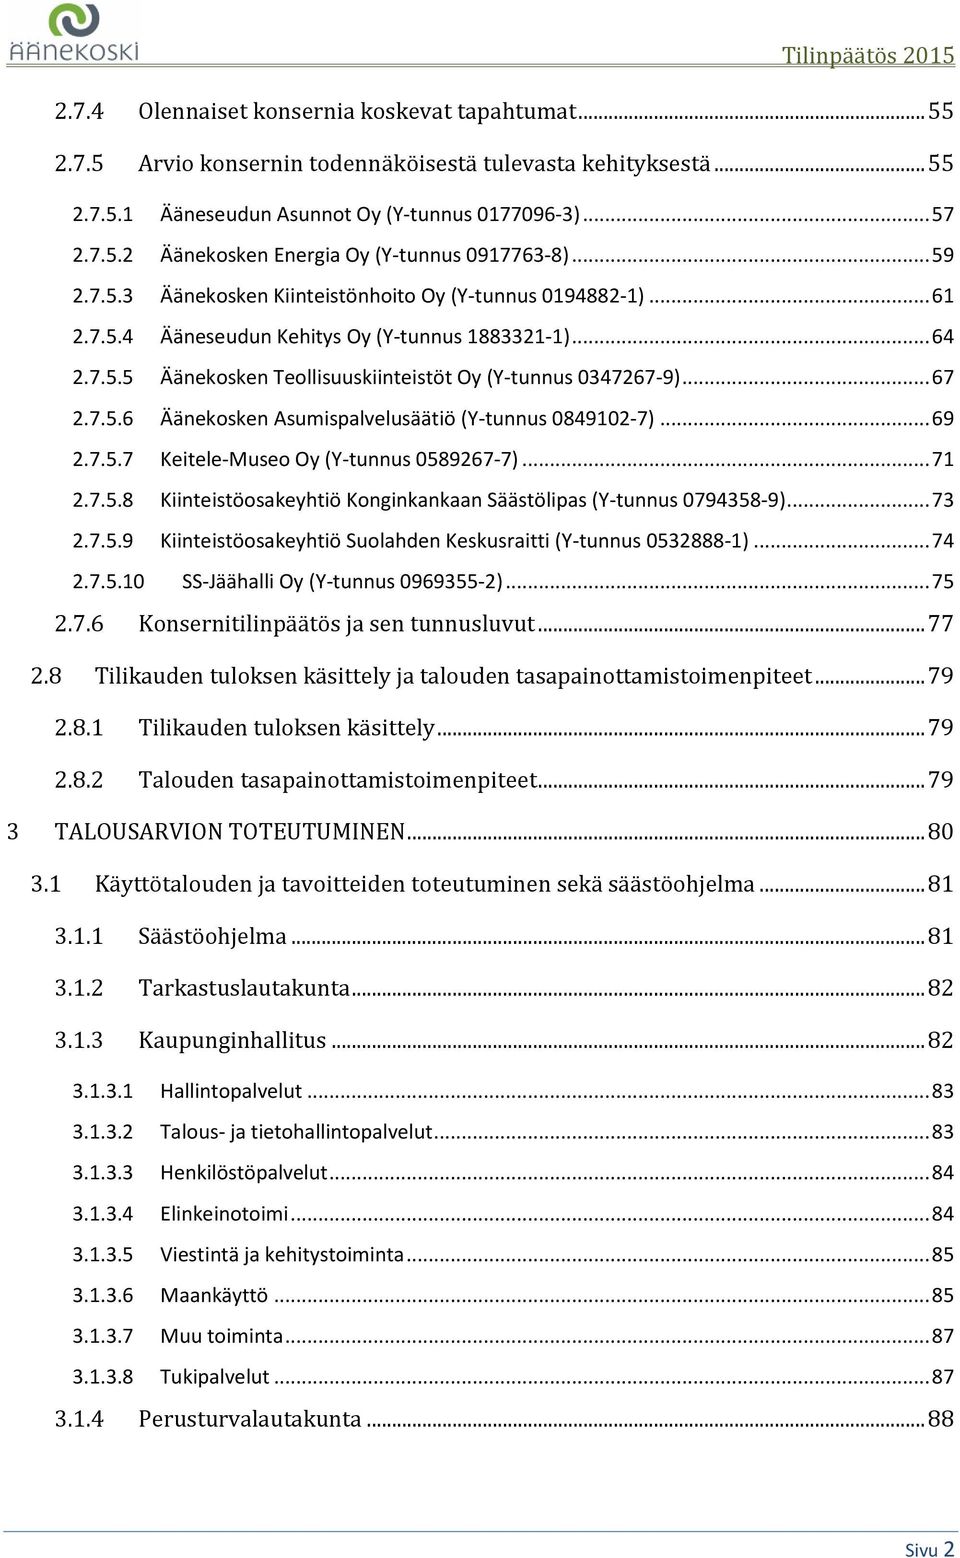 7.5.6 Äänekosken Asumispalvelusäätiö (Y-tunnus 0849102-7)... 69 2.7.5.7 Keitele-Museo Oy (Y-tunnus 0589267-7)... 71 2.7.5.8 Kiinteistöosakeyhtiö Konginkankaan Säästölipas (Y-tunnus 0794358-9)... 73 2.